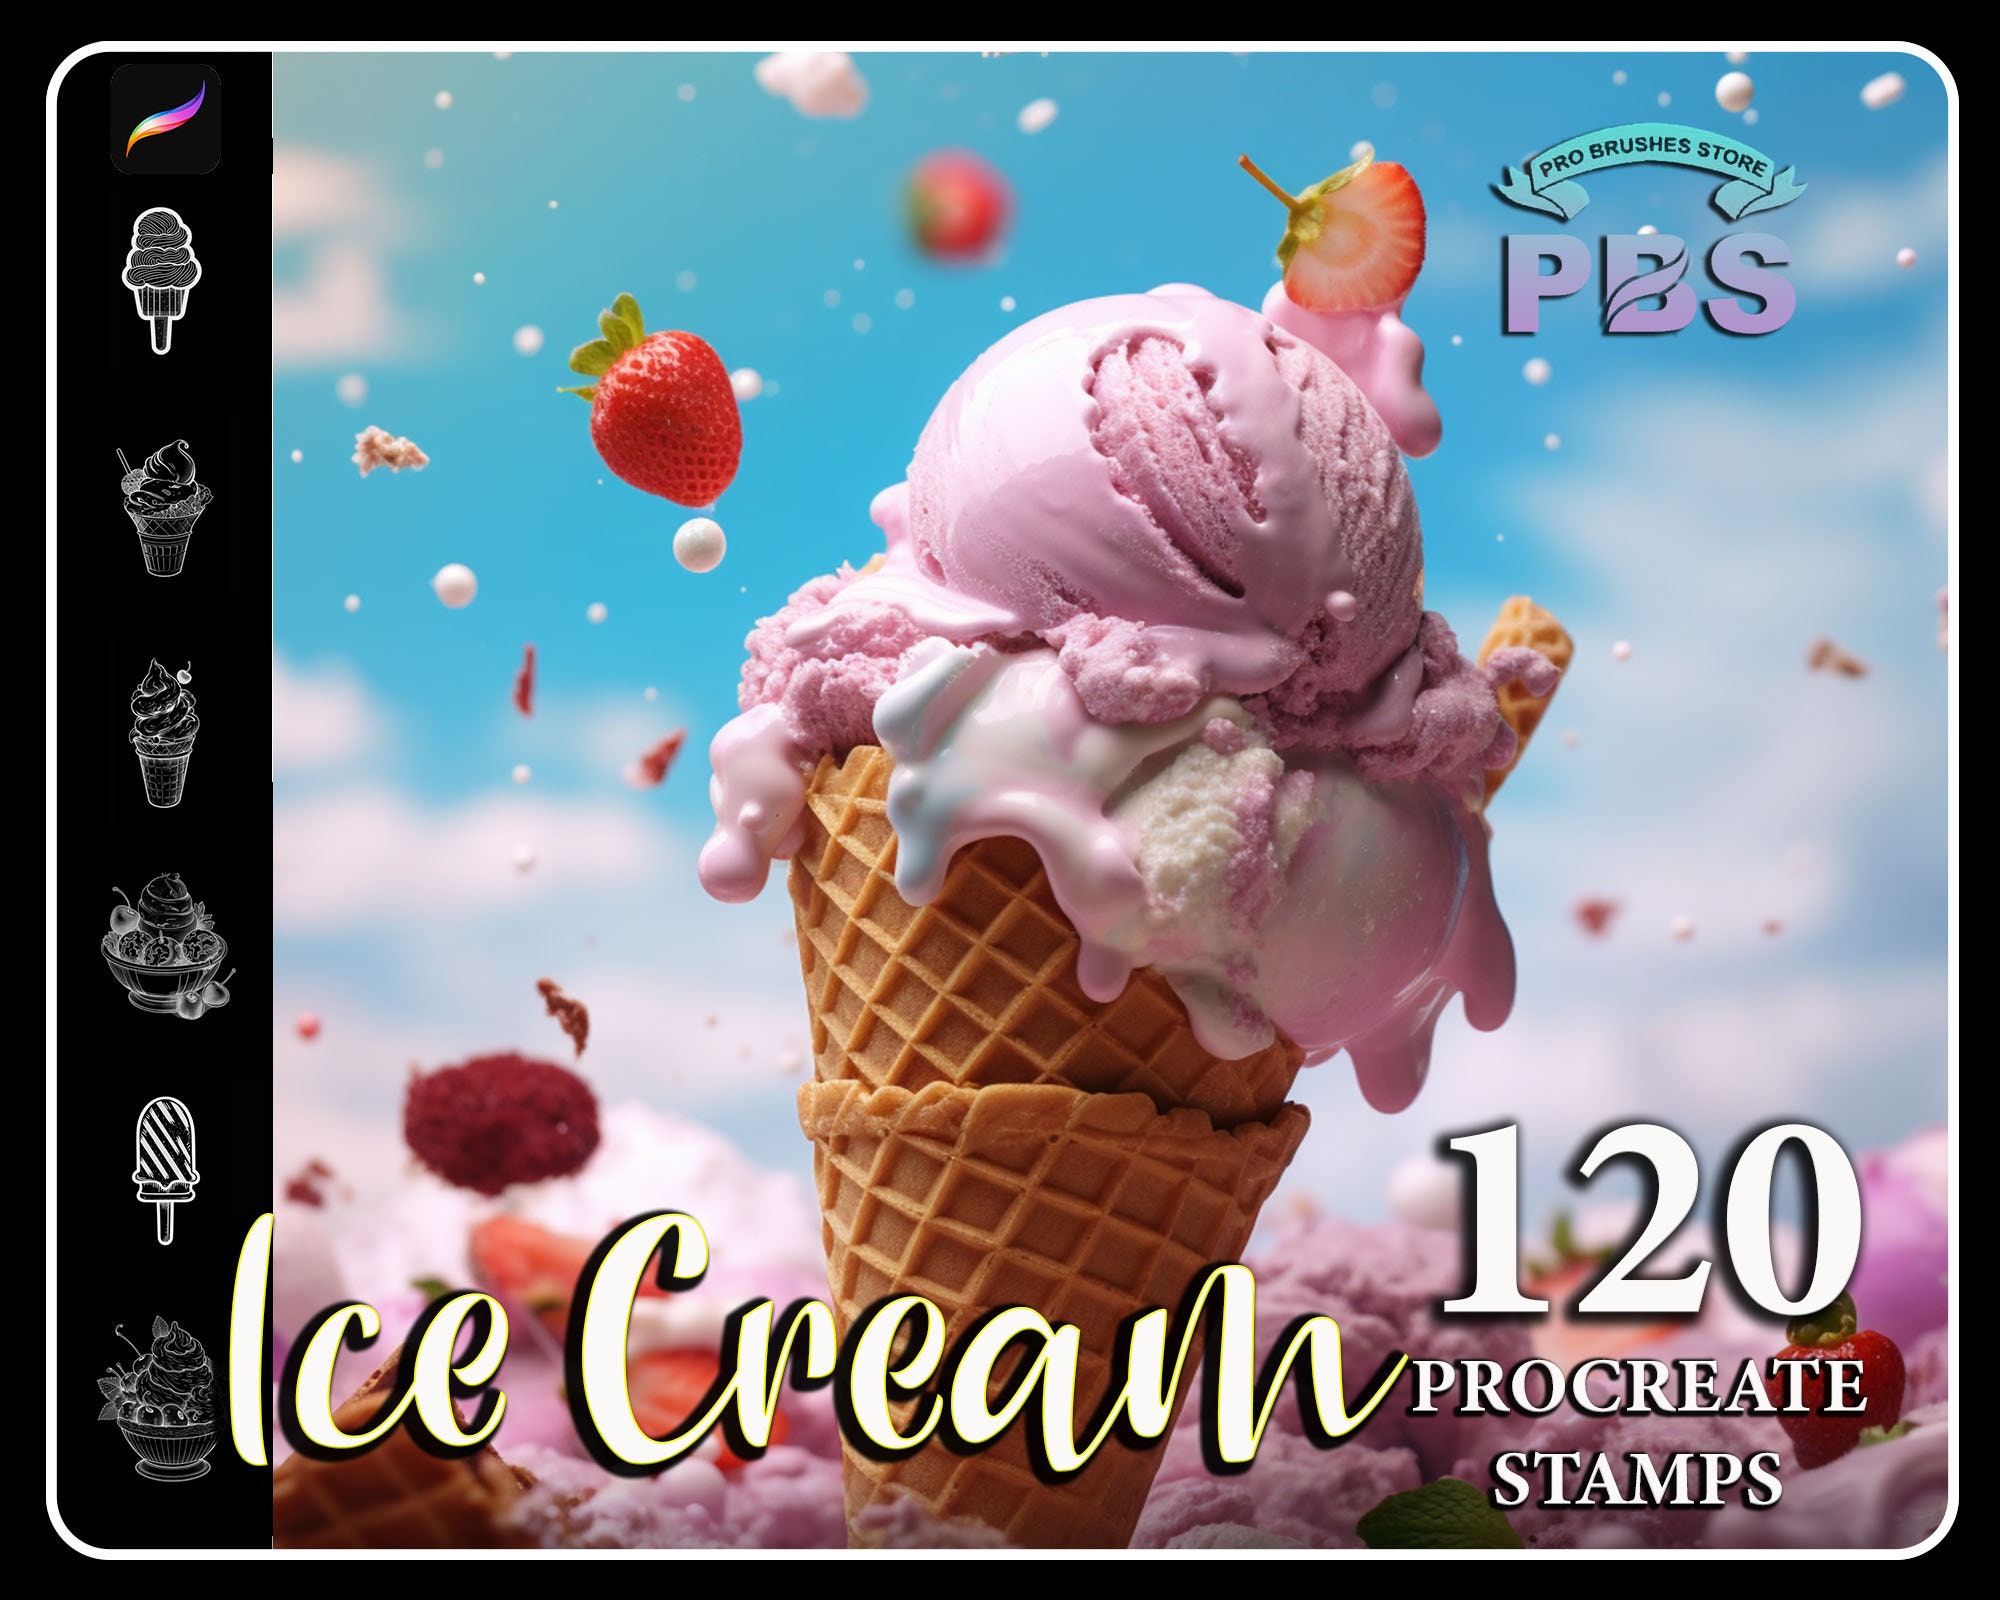 Mochi Ice Cream Procreate Palette 30 HEX Color Codes Instant -  Portugal